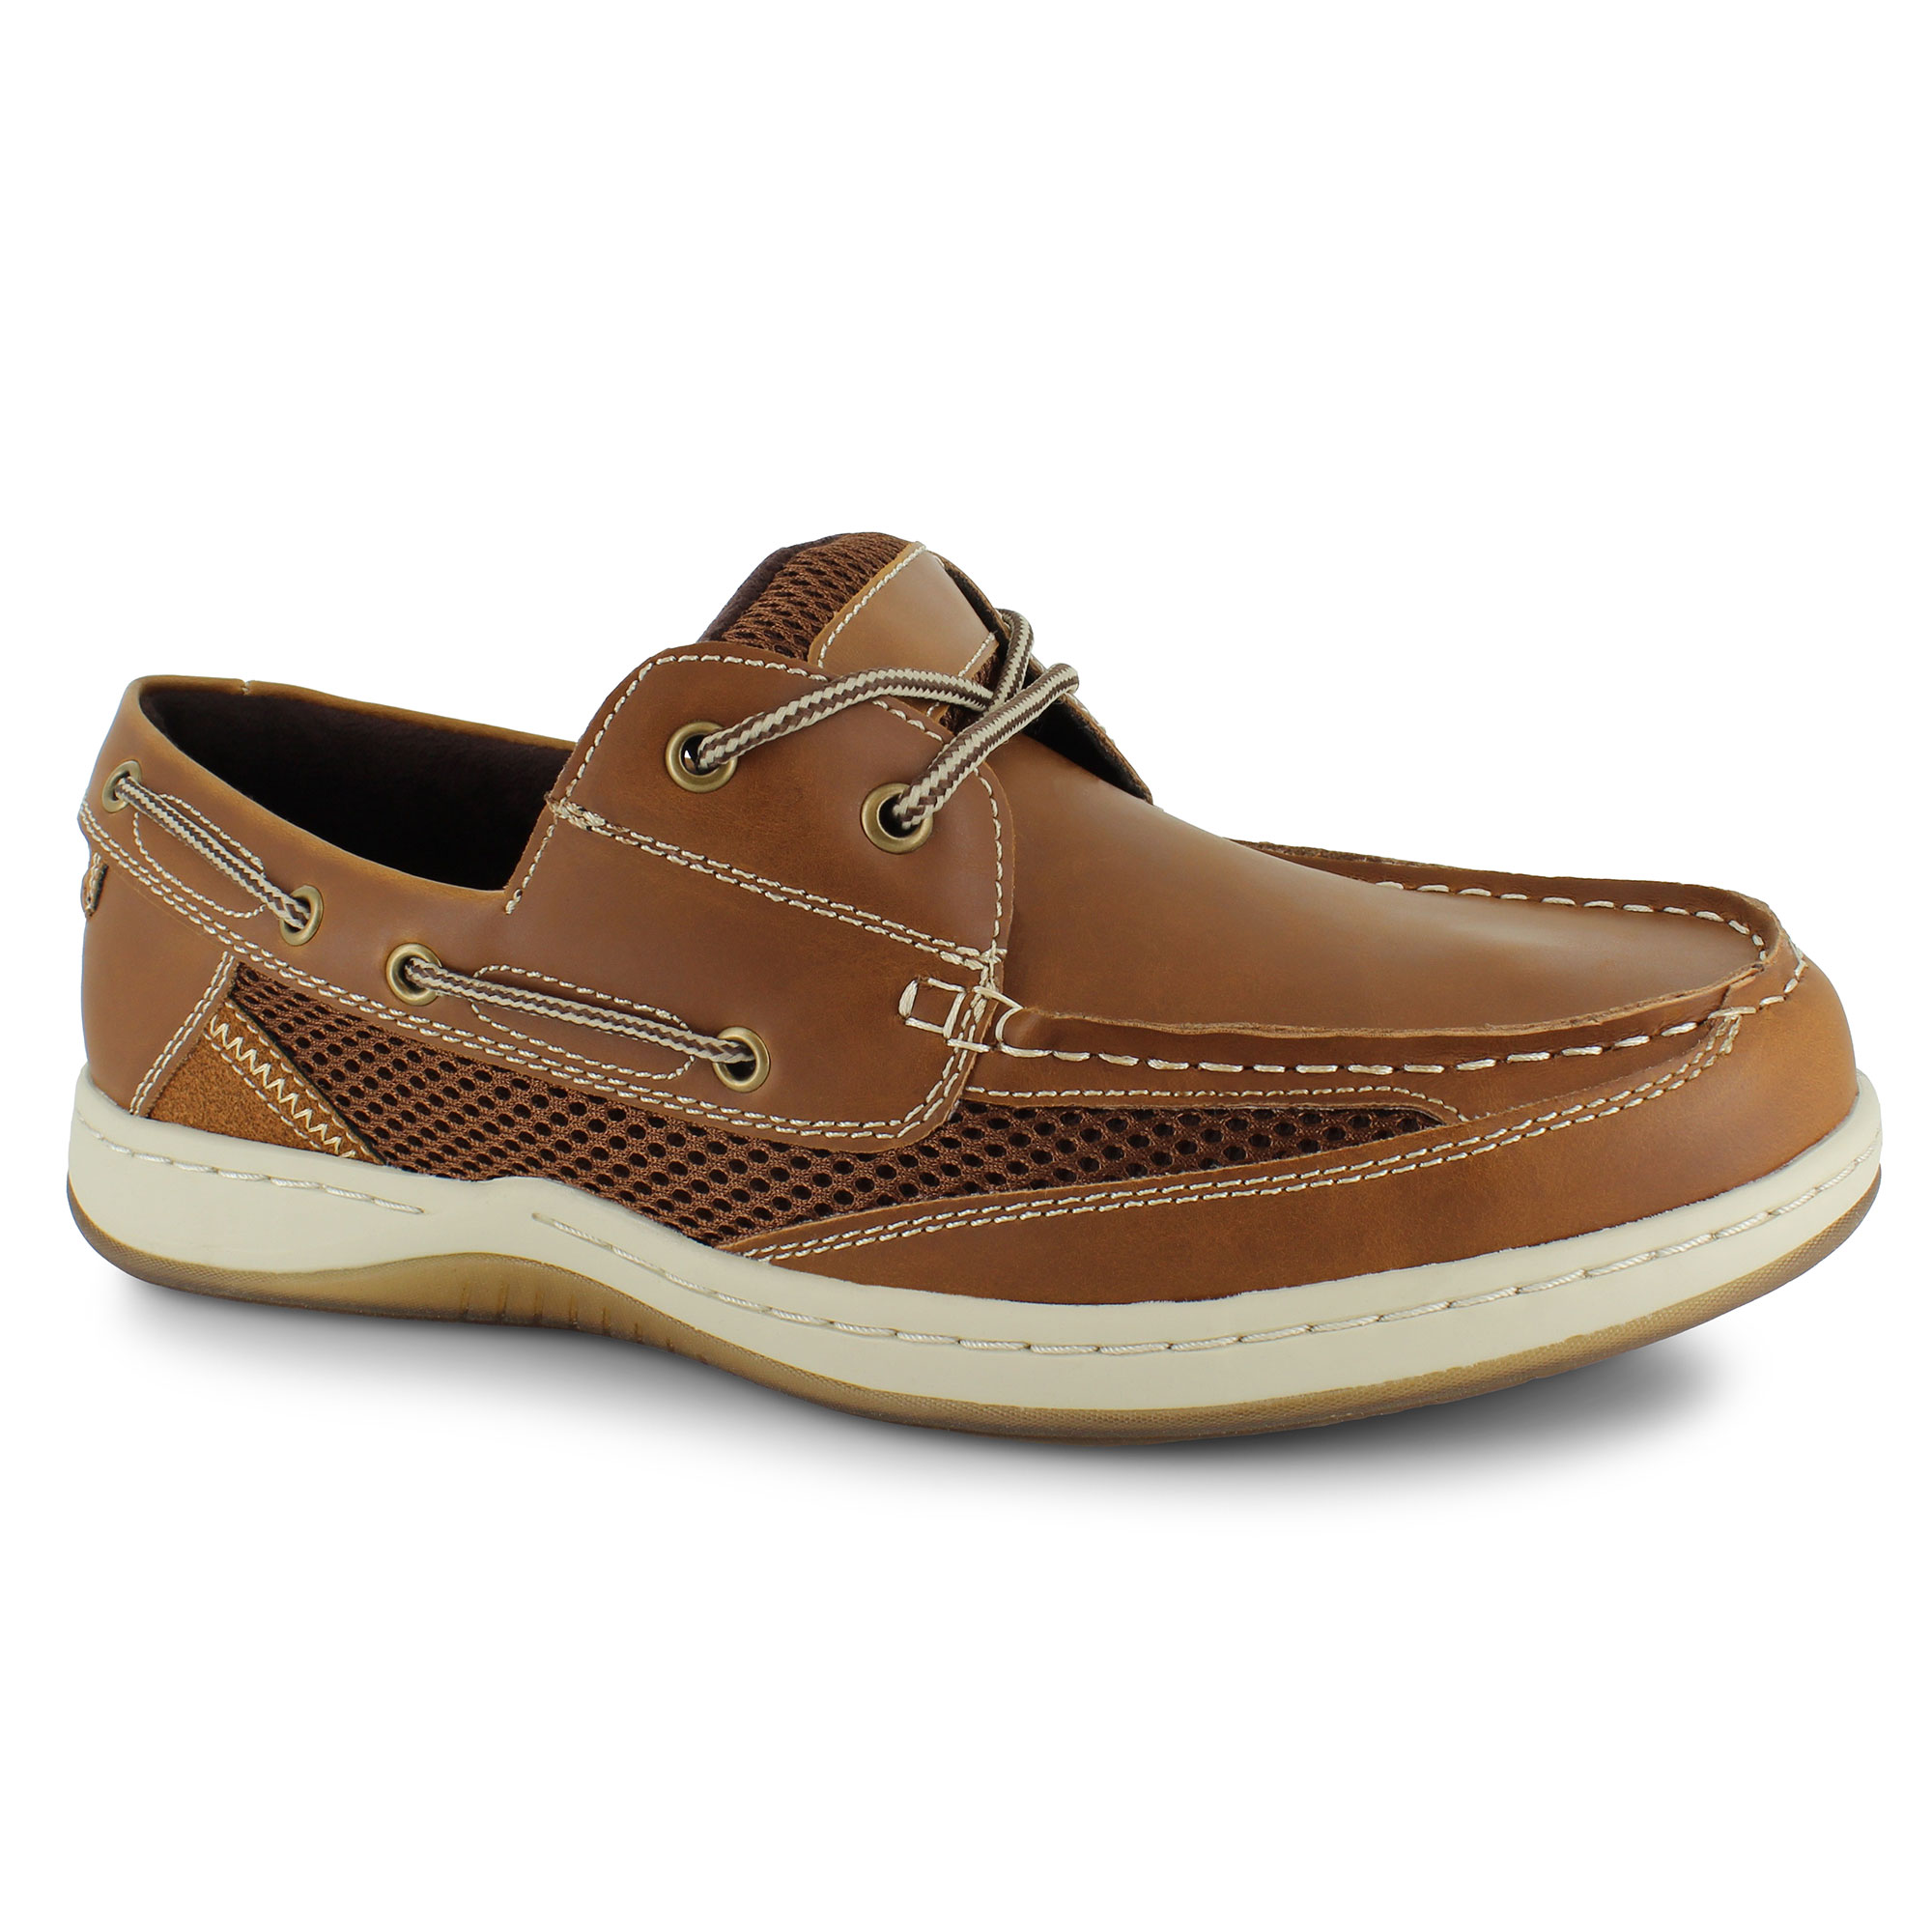 Men's Boat Shoes | Shop Now at SHOE SHOW MEGA